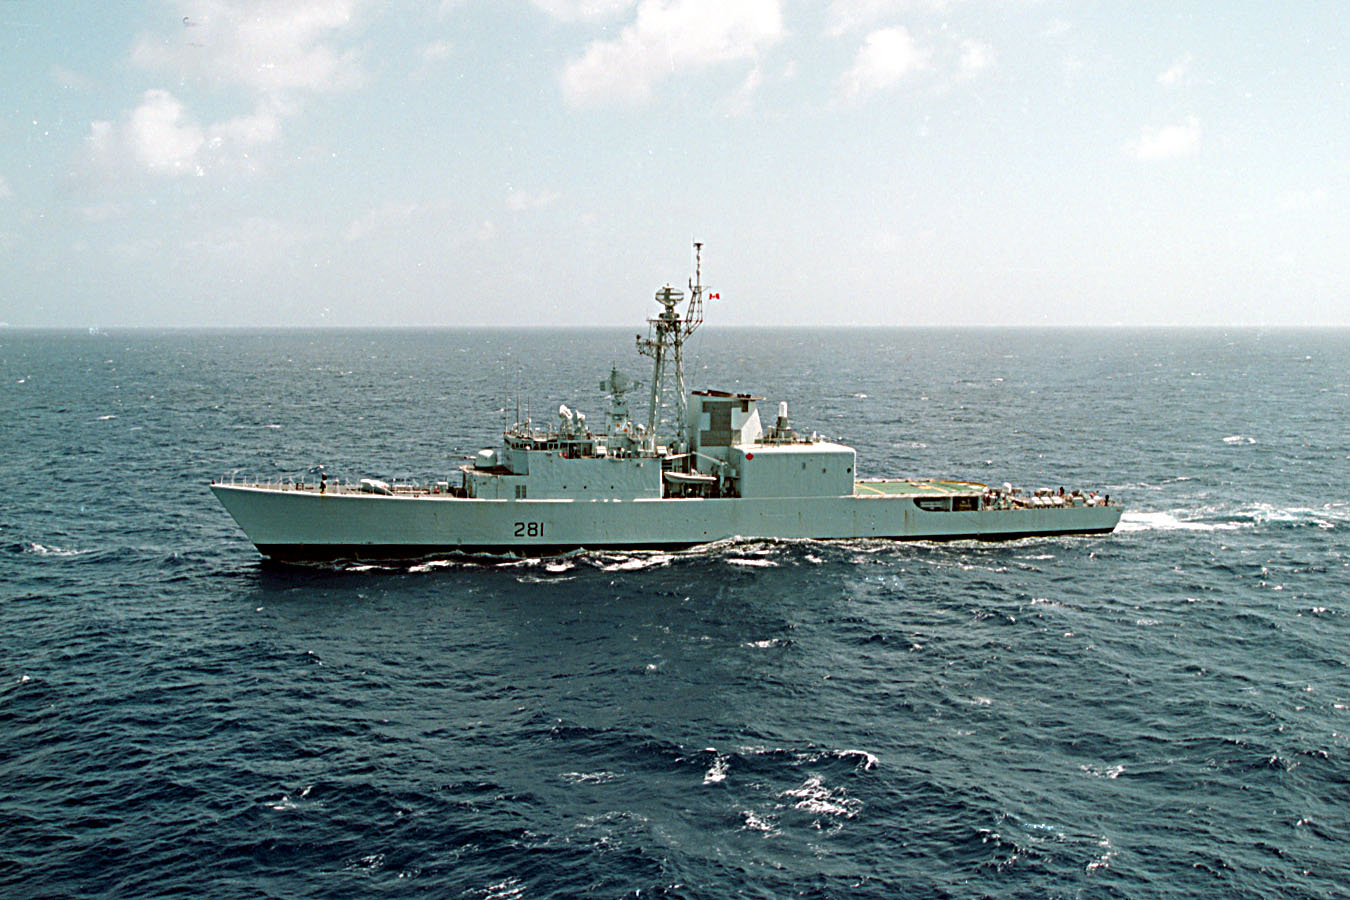 HMCS HURON post-TRUMP refit